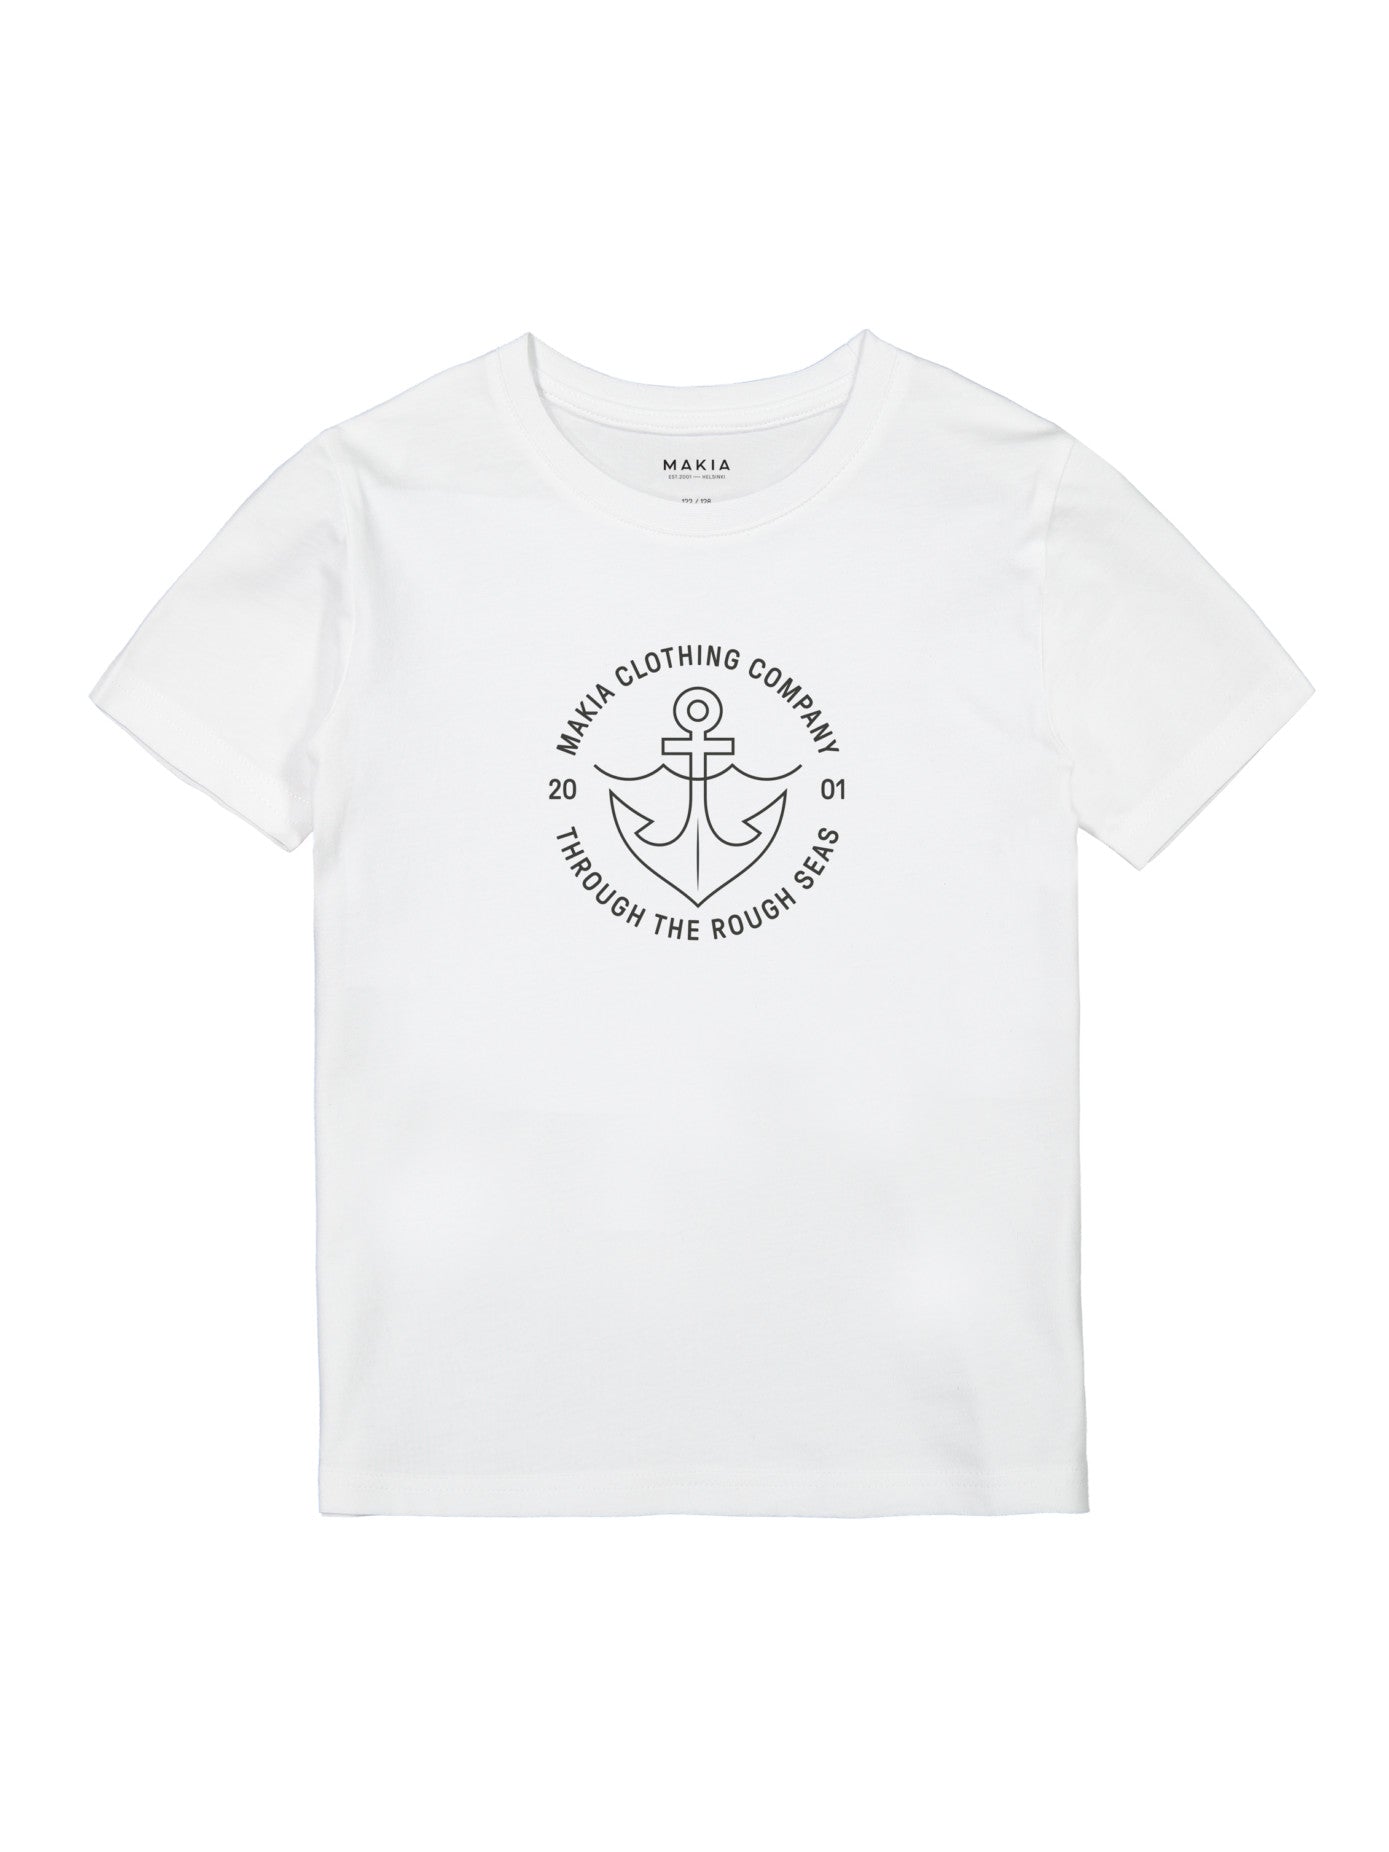 Hook T-Shirt - T-Shirt für Kinder und Jugendliche